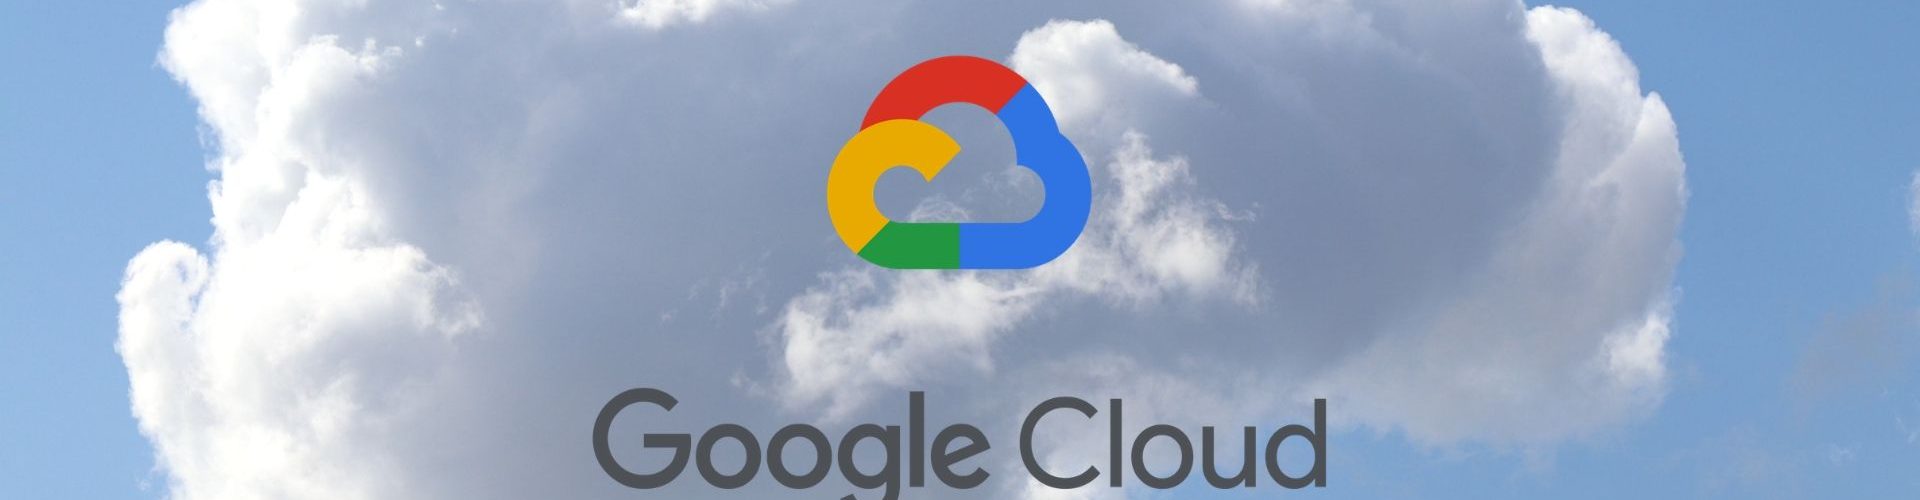 Google Cloud - irass.pl